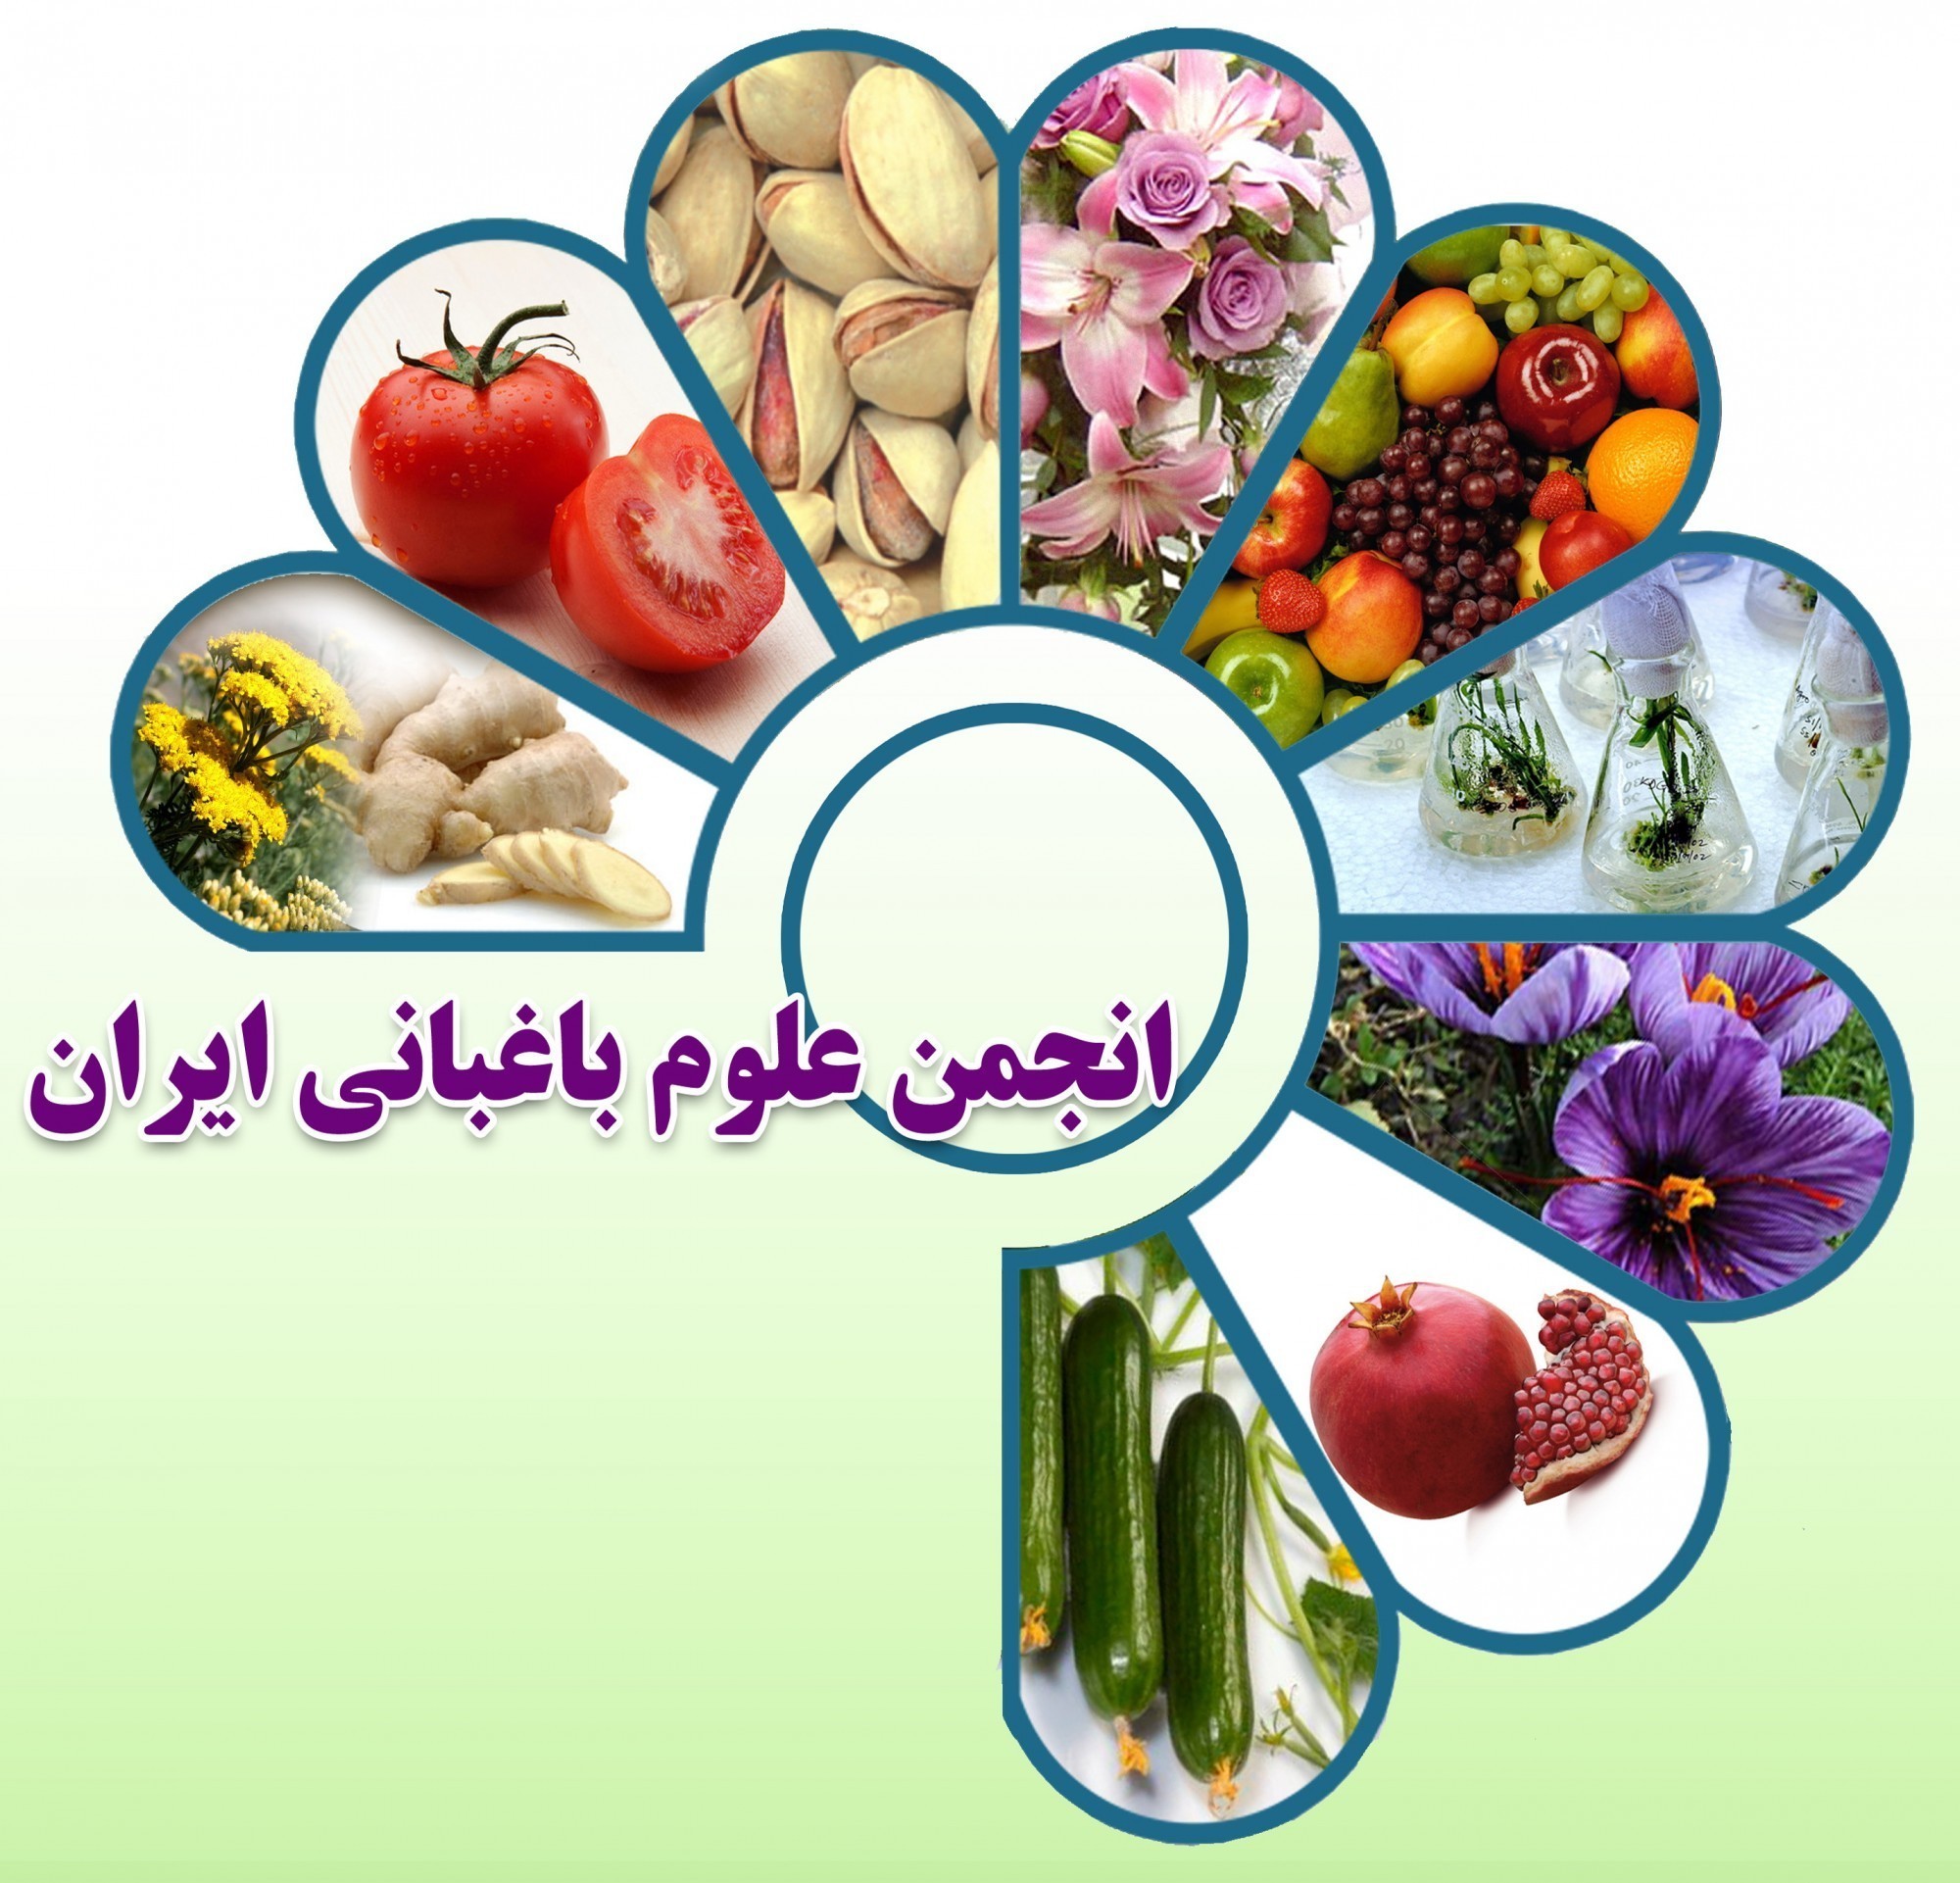 انجمن علوم باغبانی ایران